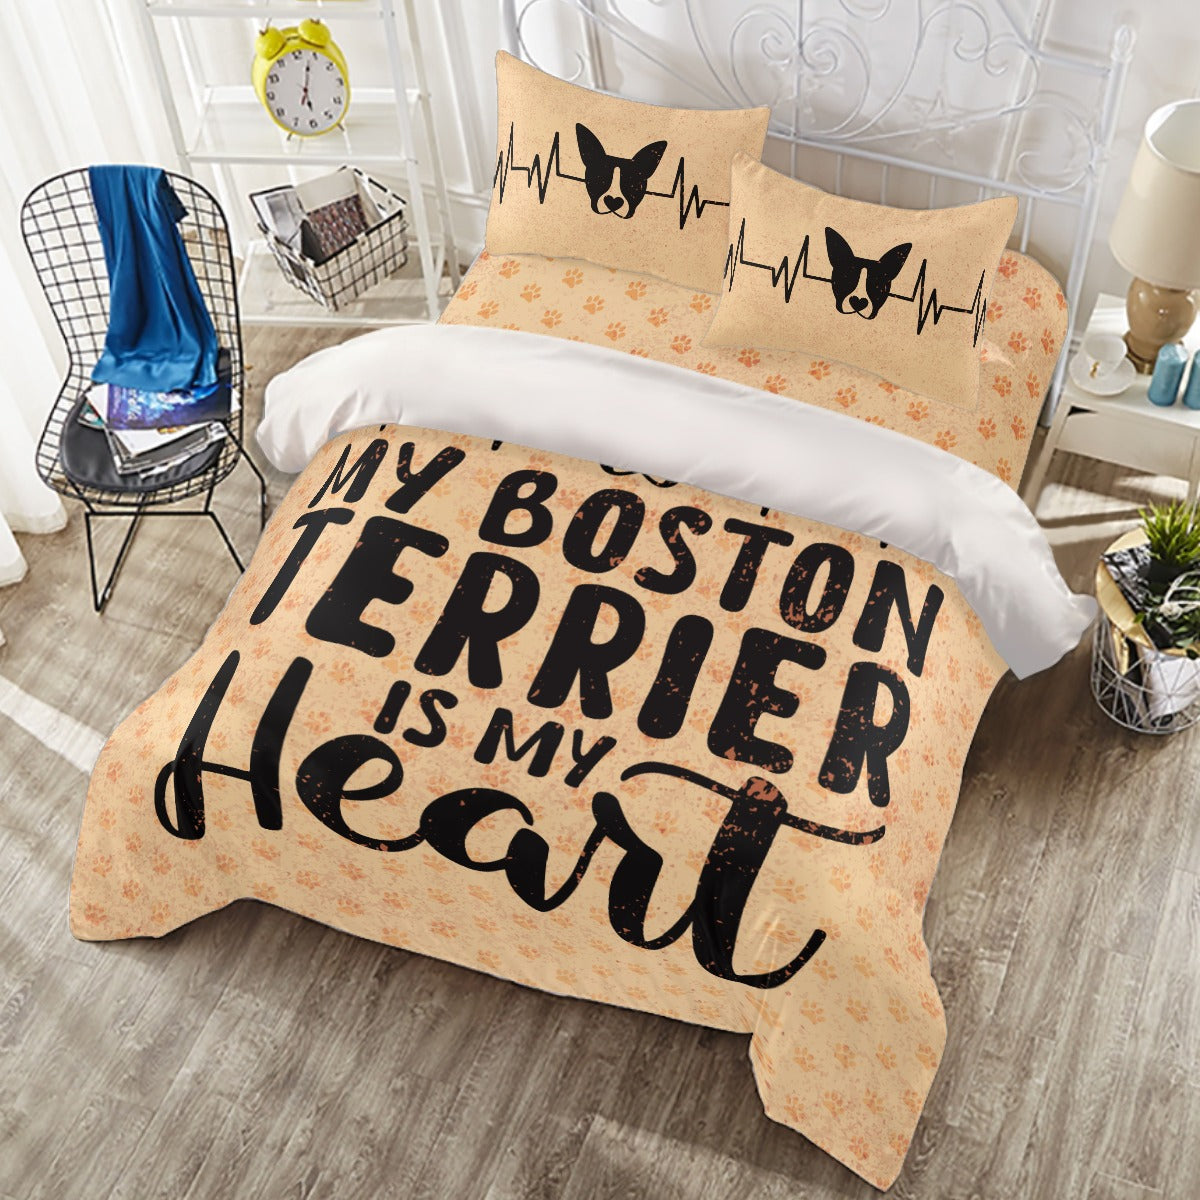 Cosmo - Duvet Cover Set for Boston Terrier lovers